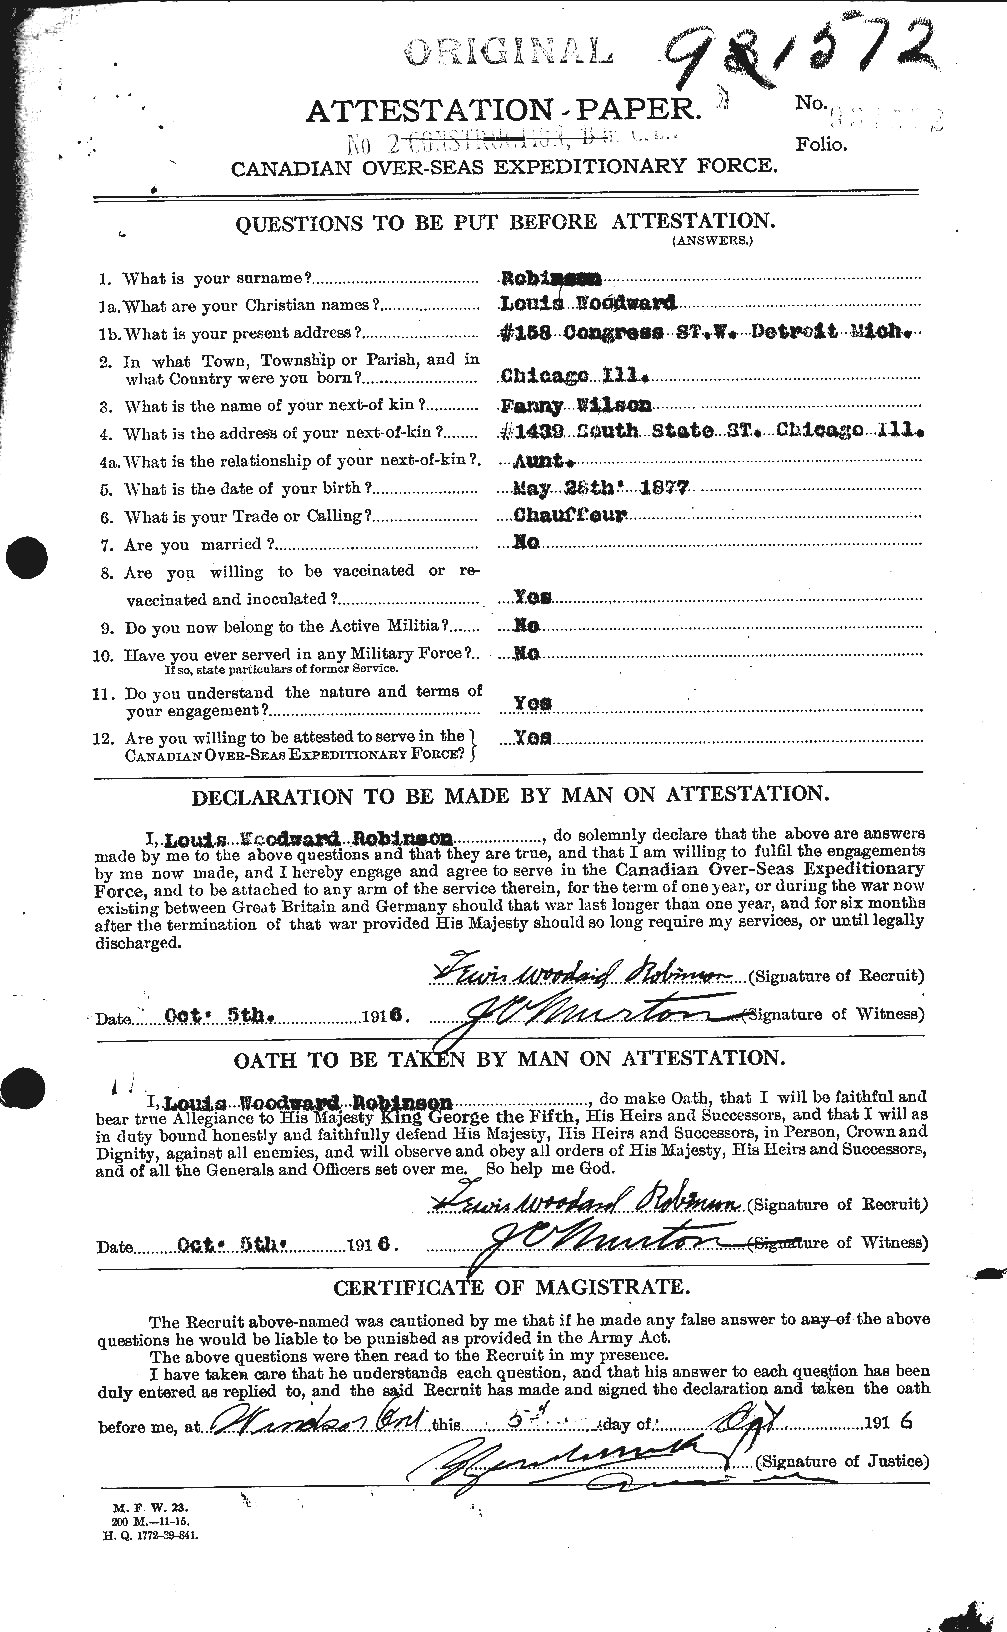 Dossiers du Personnel de la Première Guerre mondiale - CEC 611658a